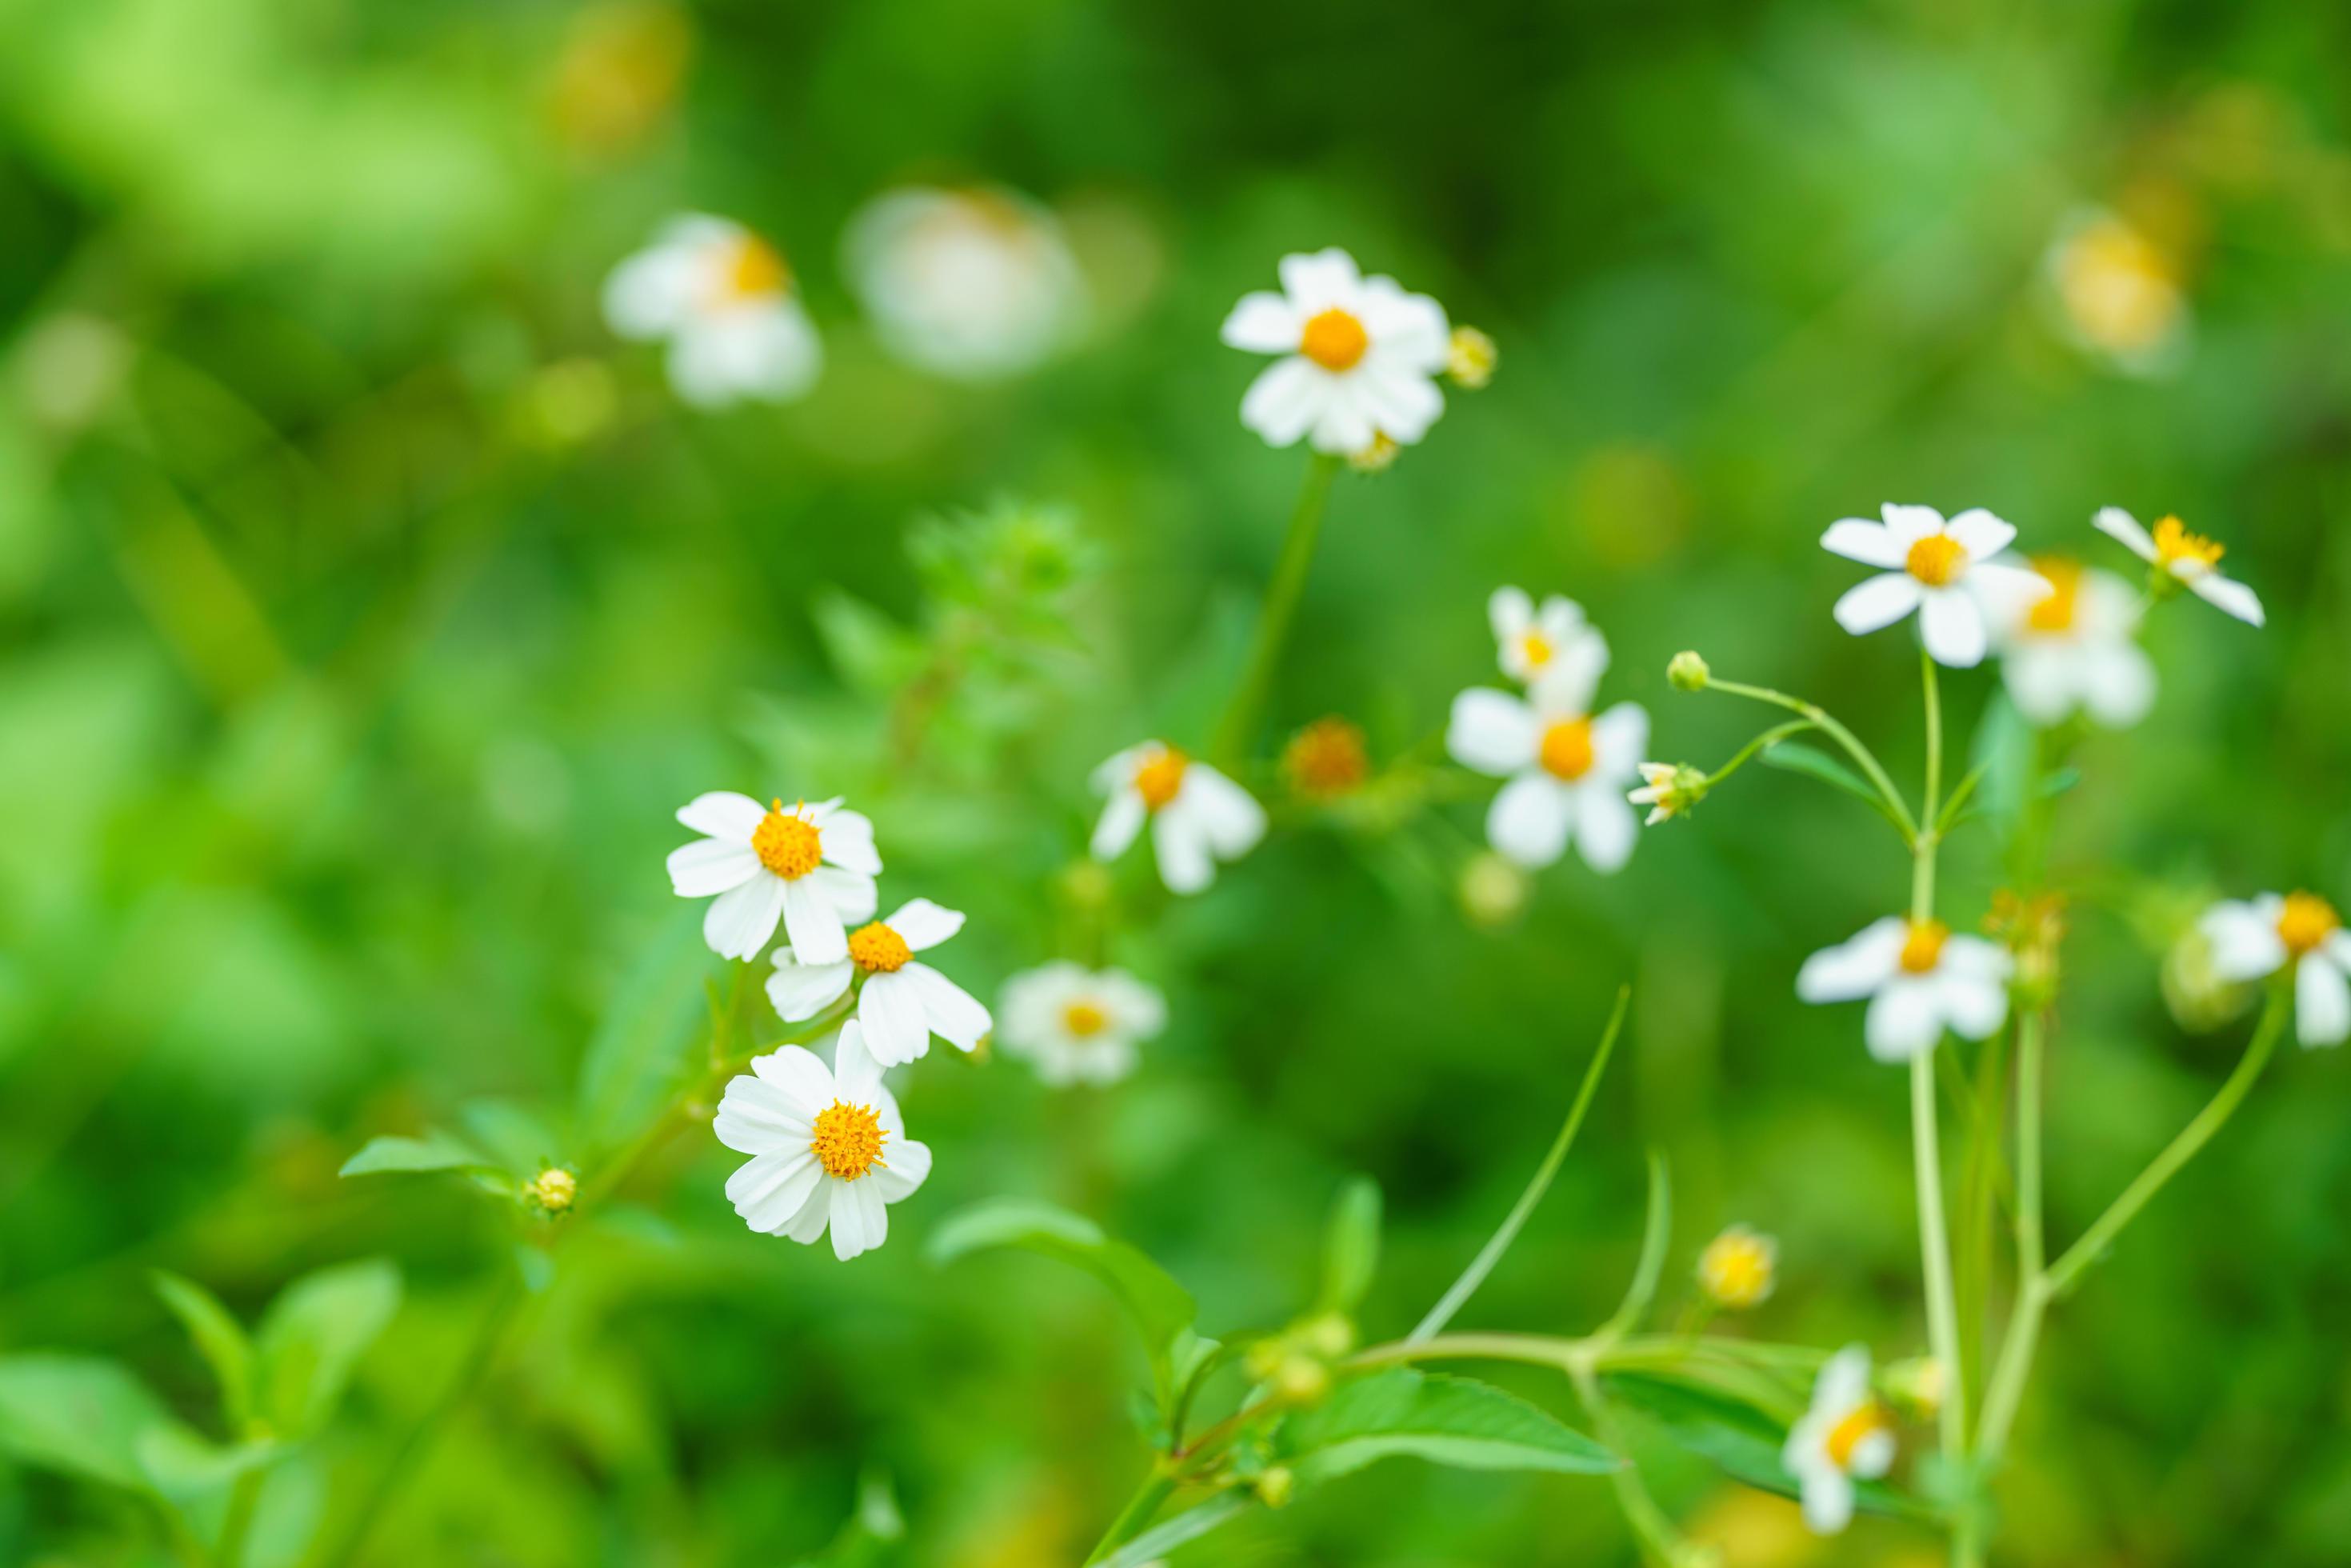 Những bông hoa nhỏ trắng chúng tôi gửi đến bạn sẽ mang lại cảm giác yên bình, thư thái và đầy hy vọng cho ngày mới. Hãy để những cánh hoa tươi đẹp hòa cùng không khí trong lành hàng ngày của bạn.